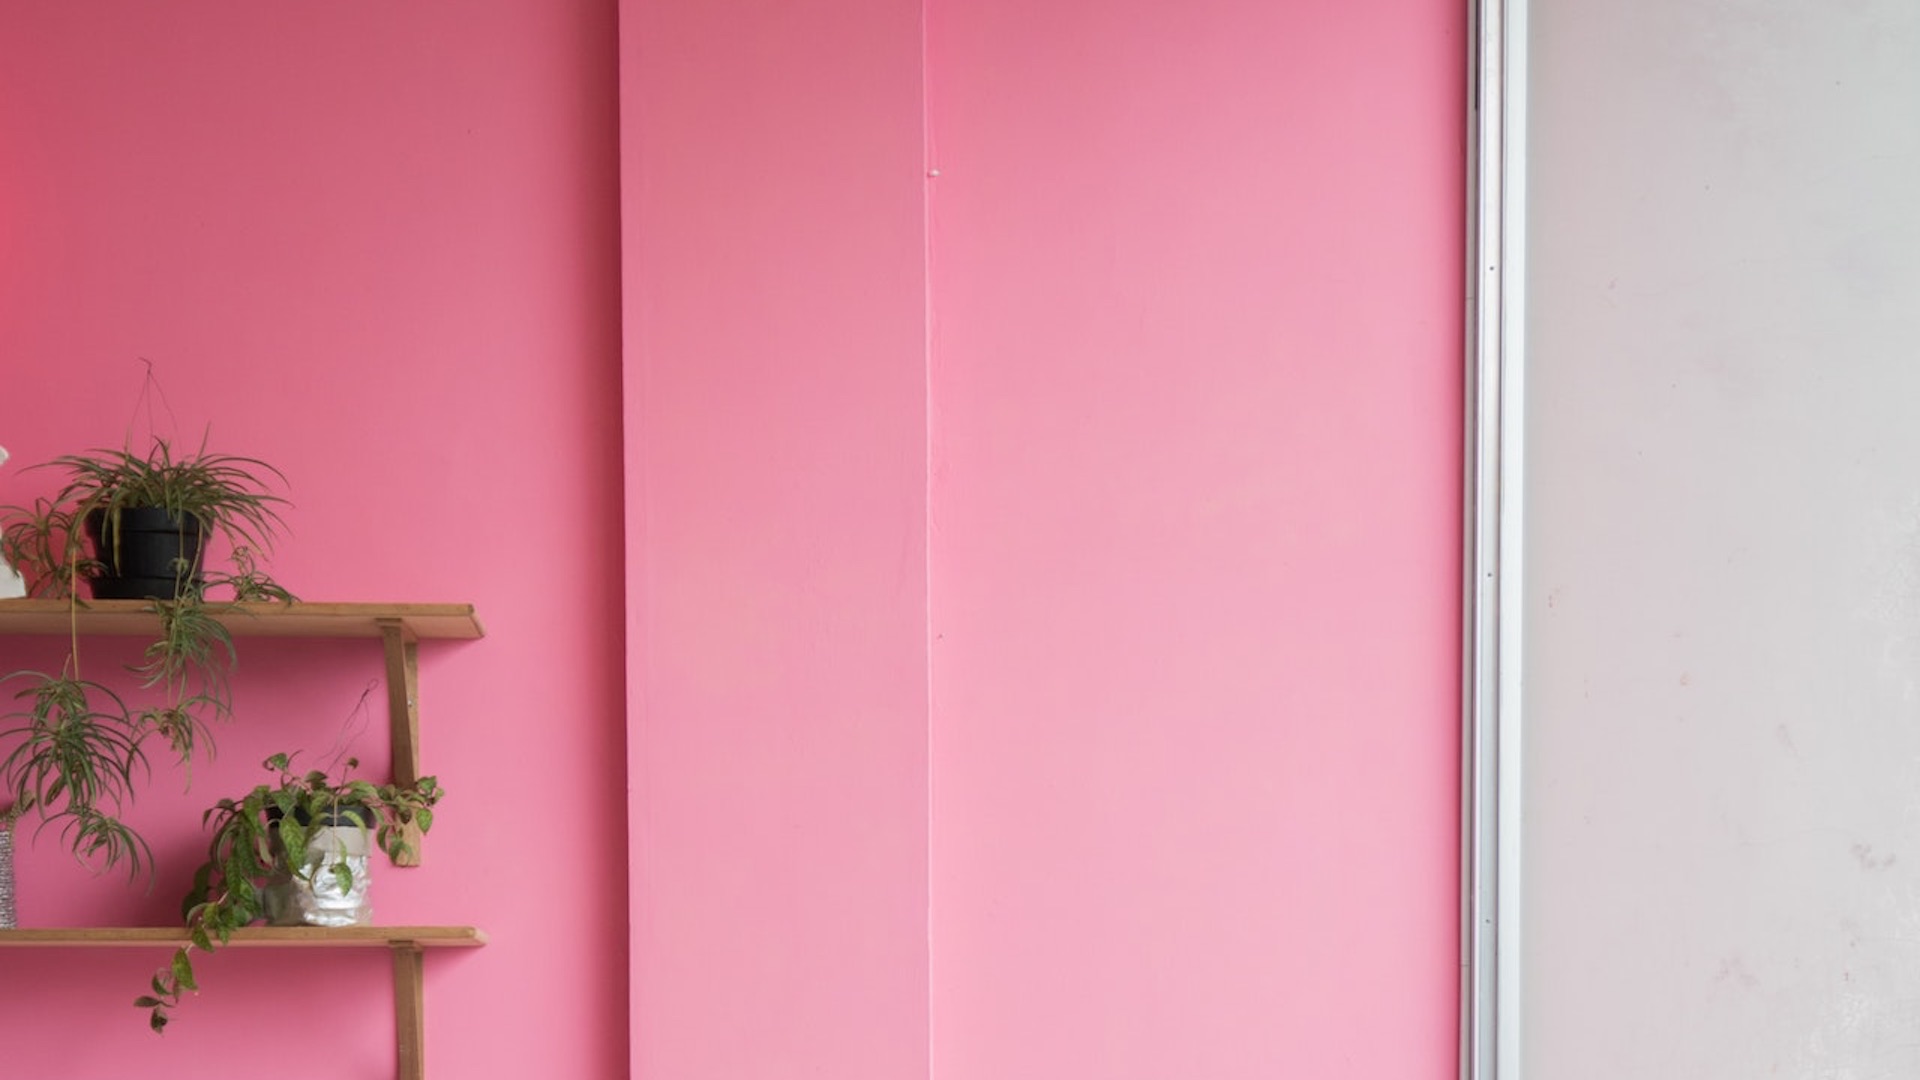 打ち合わせやリモートワークに使える無料のバーチャル背景素材 ピンクの壁と観葉植物 バーチャル背景のフリー素材集 V背景